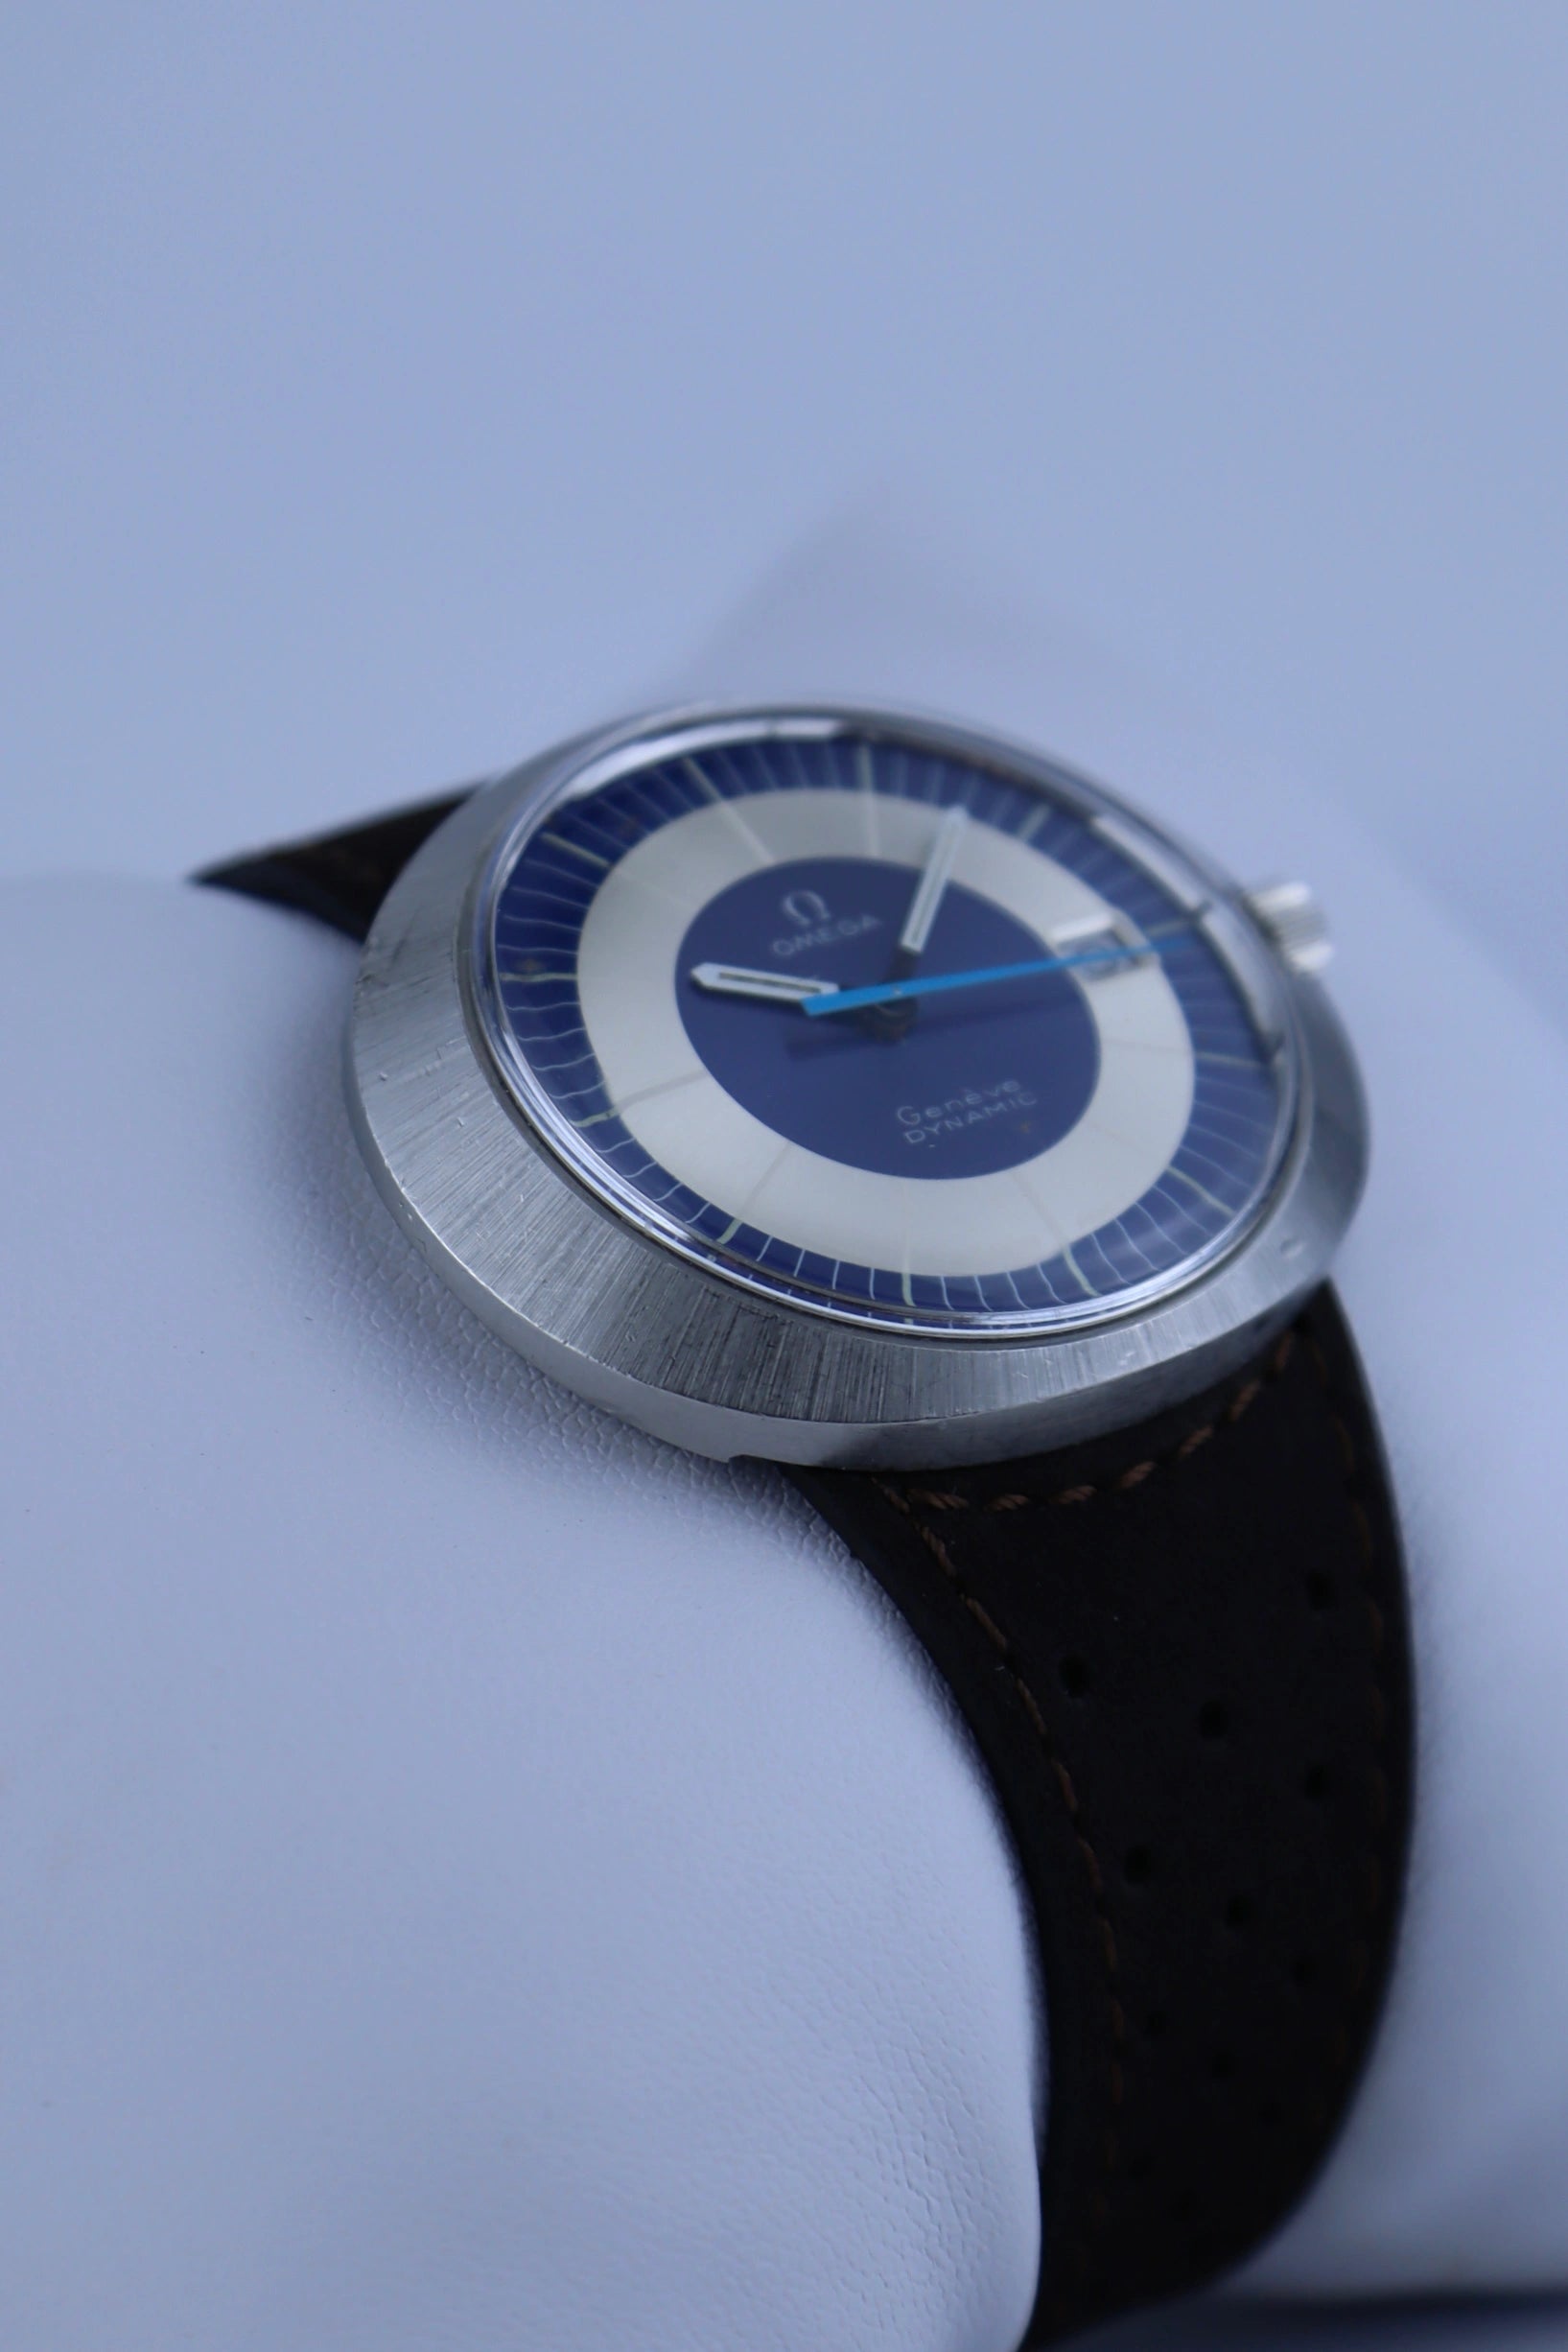 Modorwy MI2101 Smart Watch with 1.93